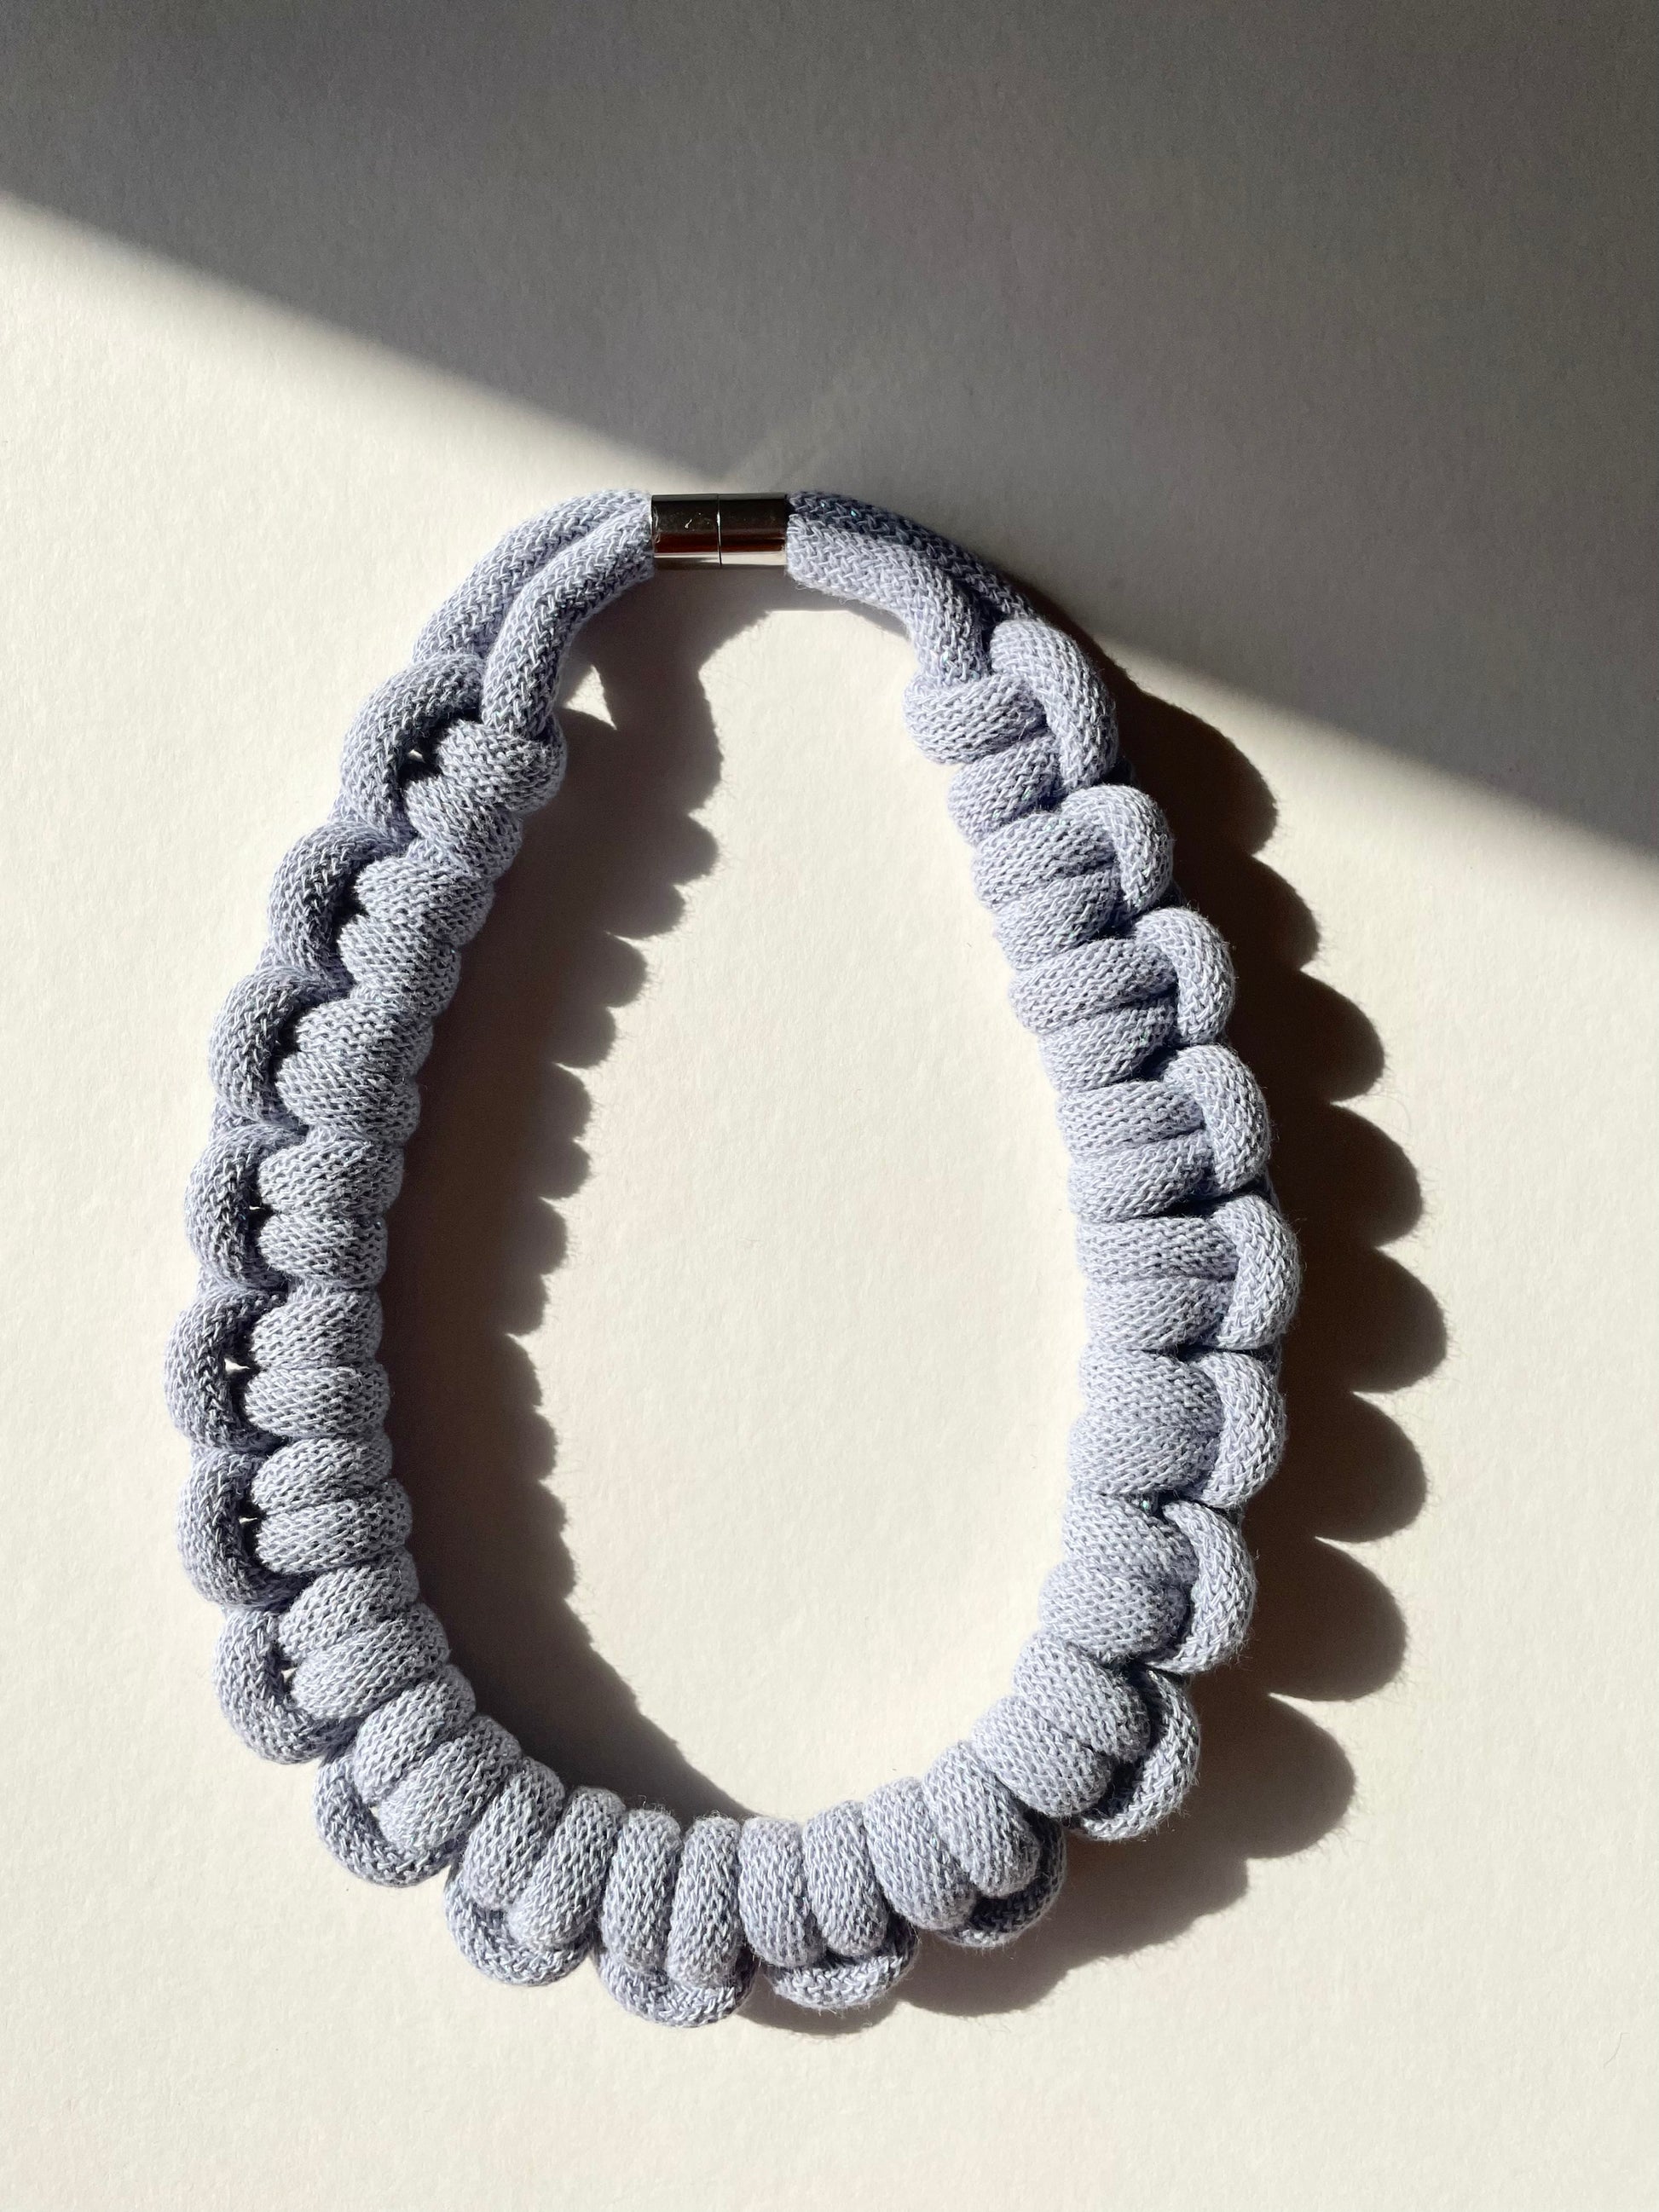 Anna cotton cord necklace - Super Seconds - Knottinger